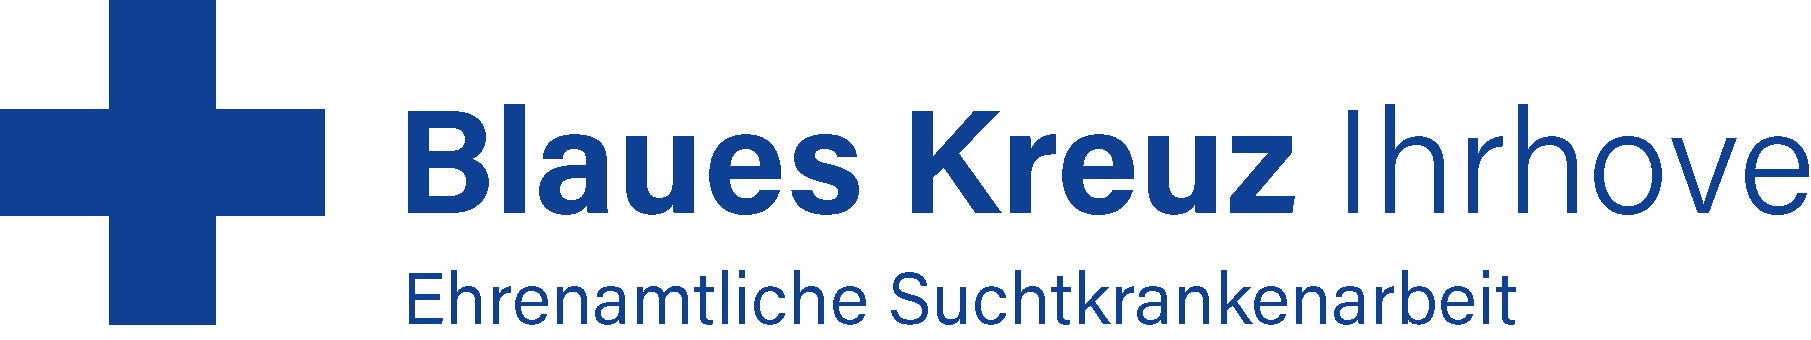 Blaues Kreuz Logo